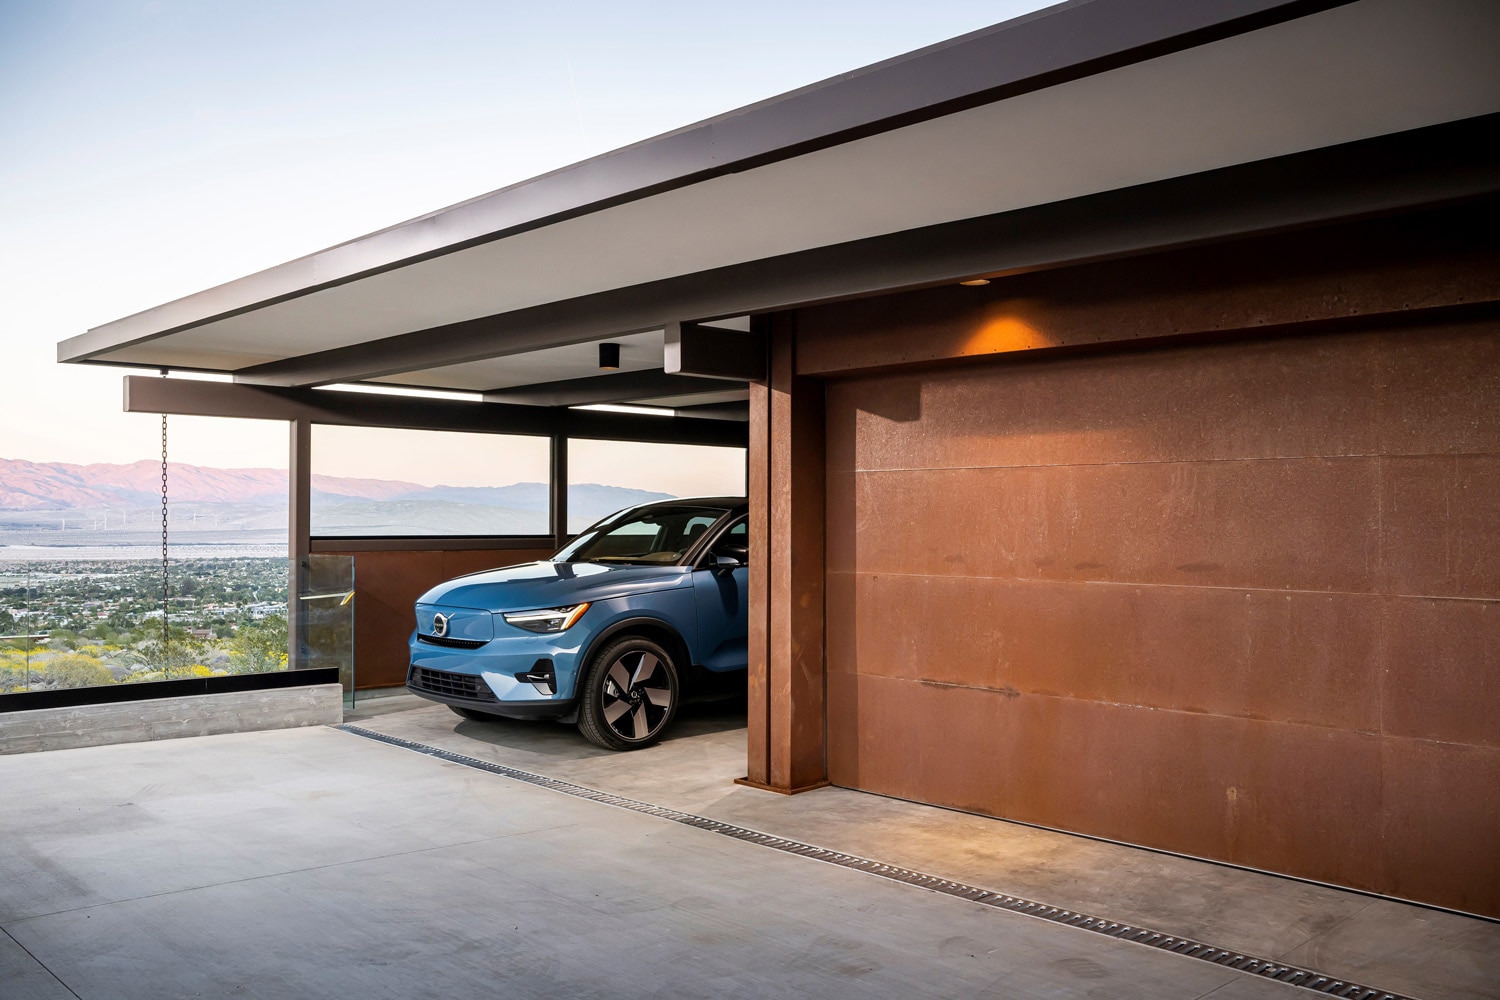 Blue Volvo parked next to a garage.